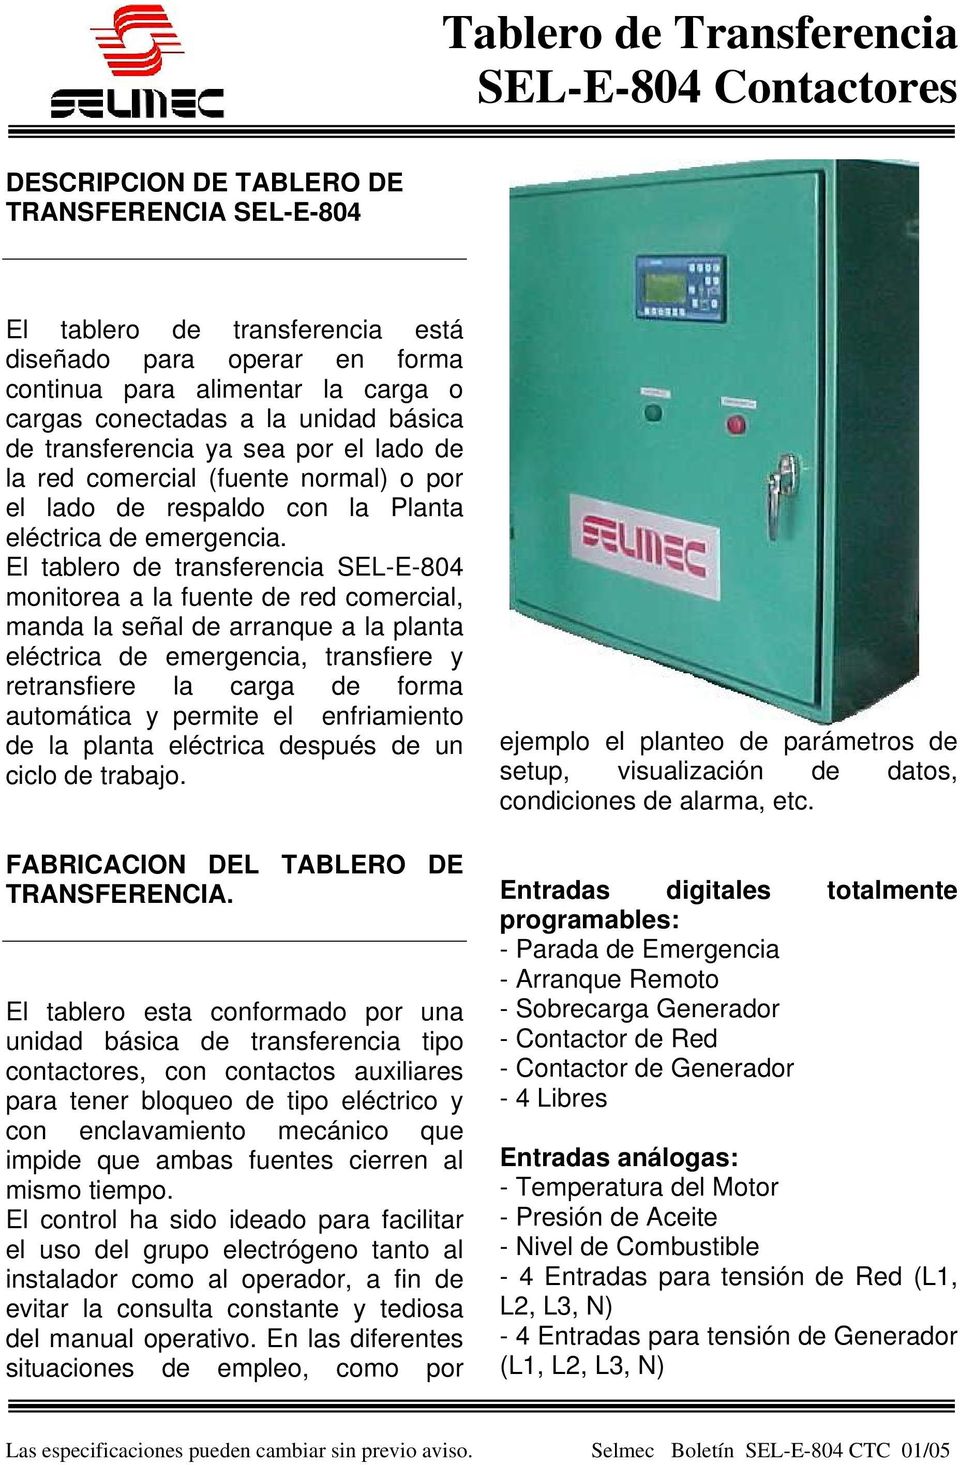 El tablero de transferencia SEL-E-804 monitorea a la fuente de red comercial, manda la señal de arranque a la planta eléctrica de emergencia, transfiere y retransfiere la carga de forma automática y